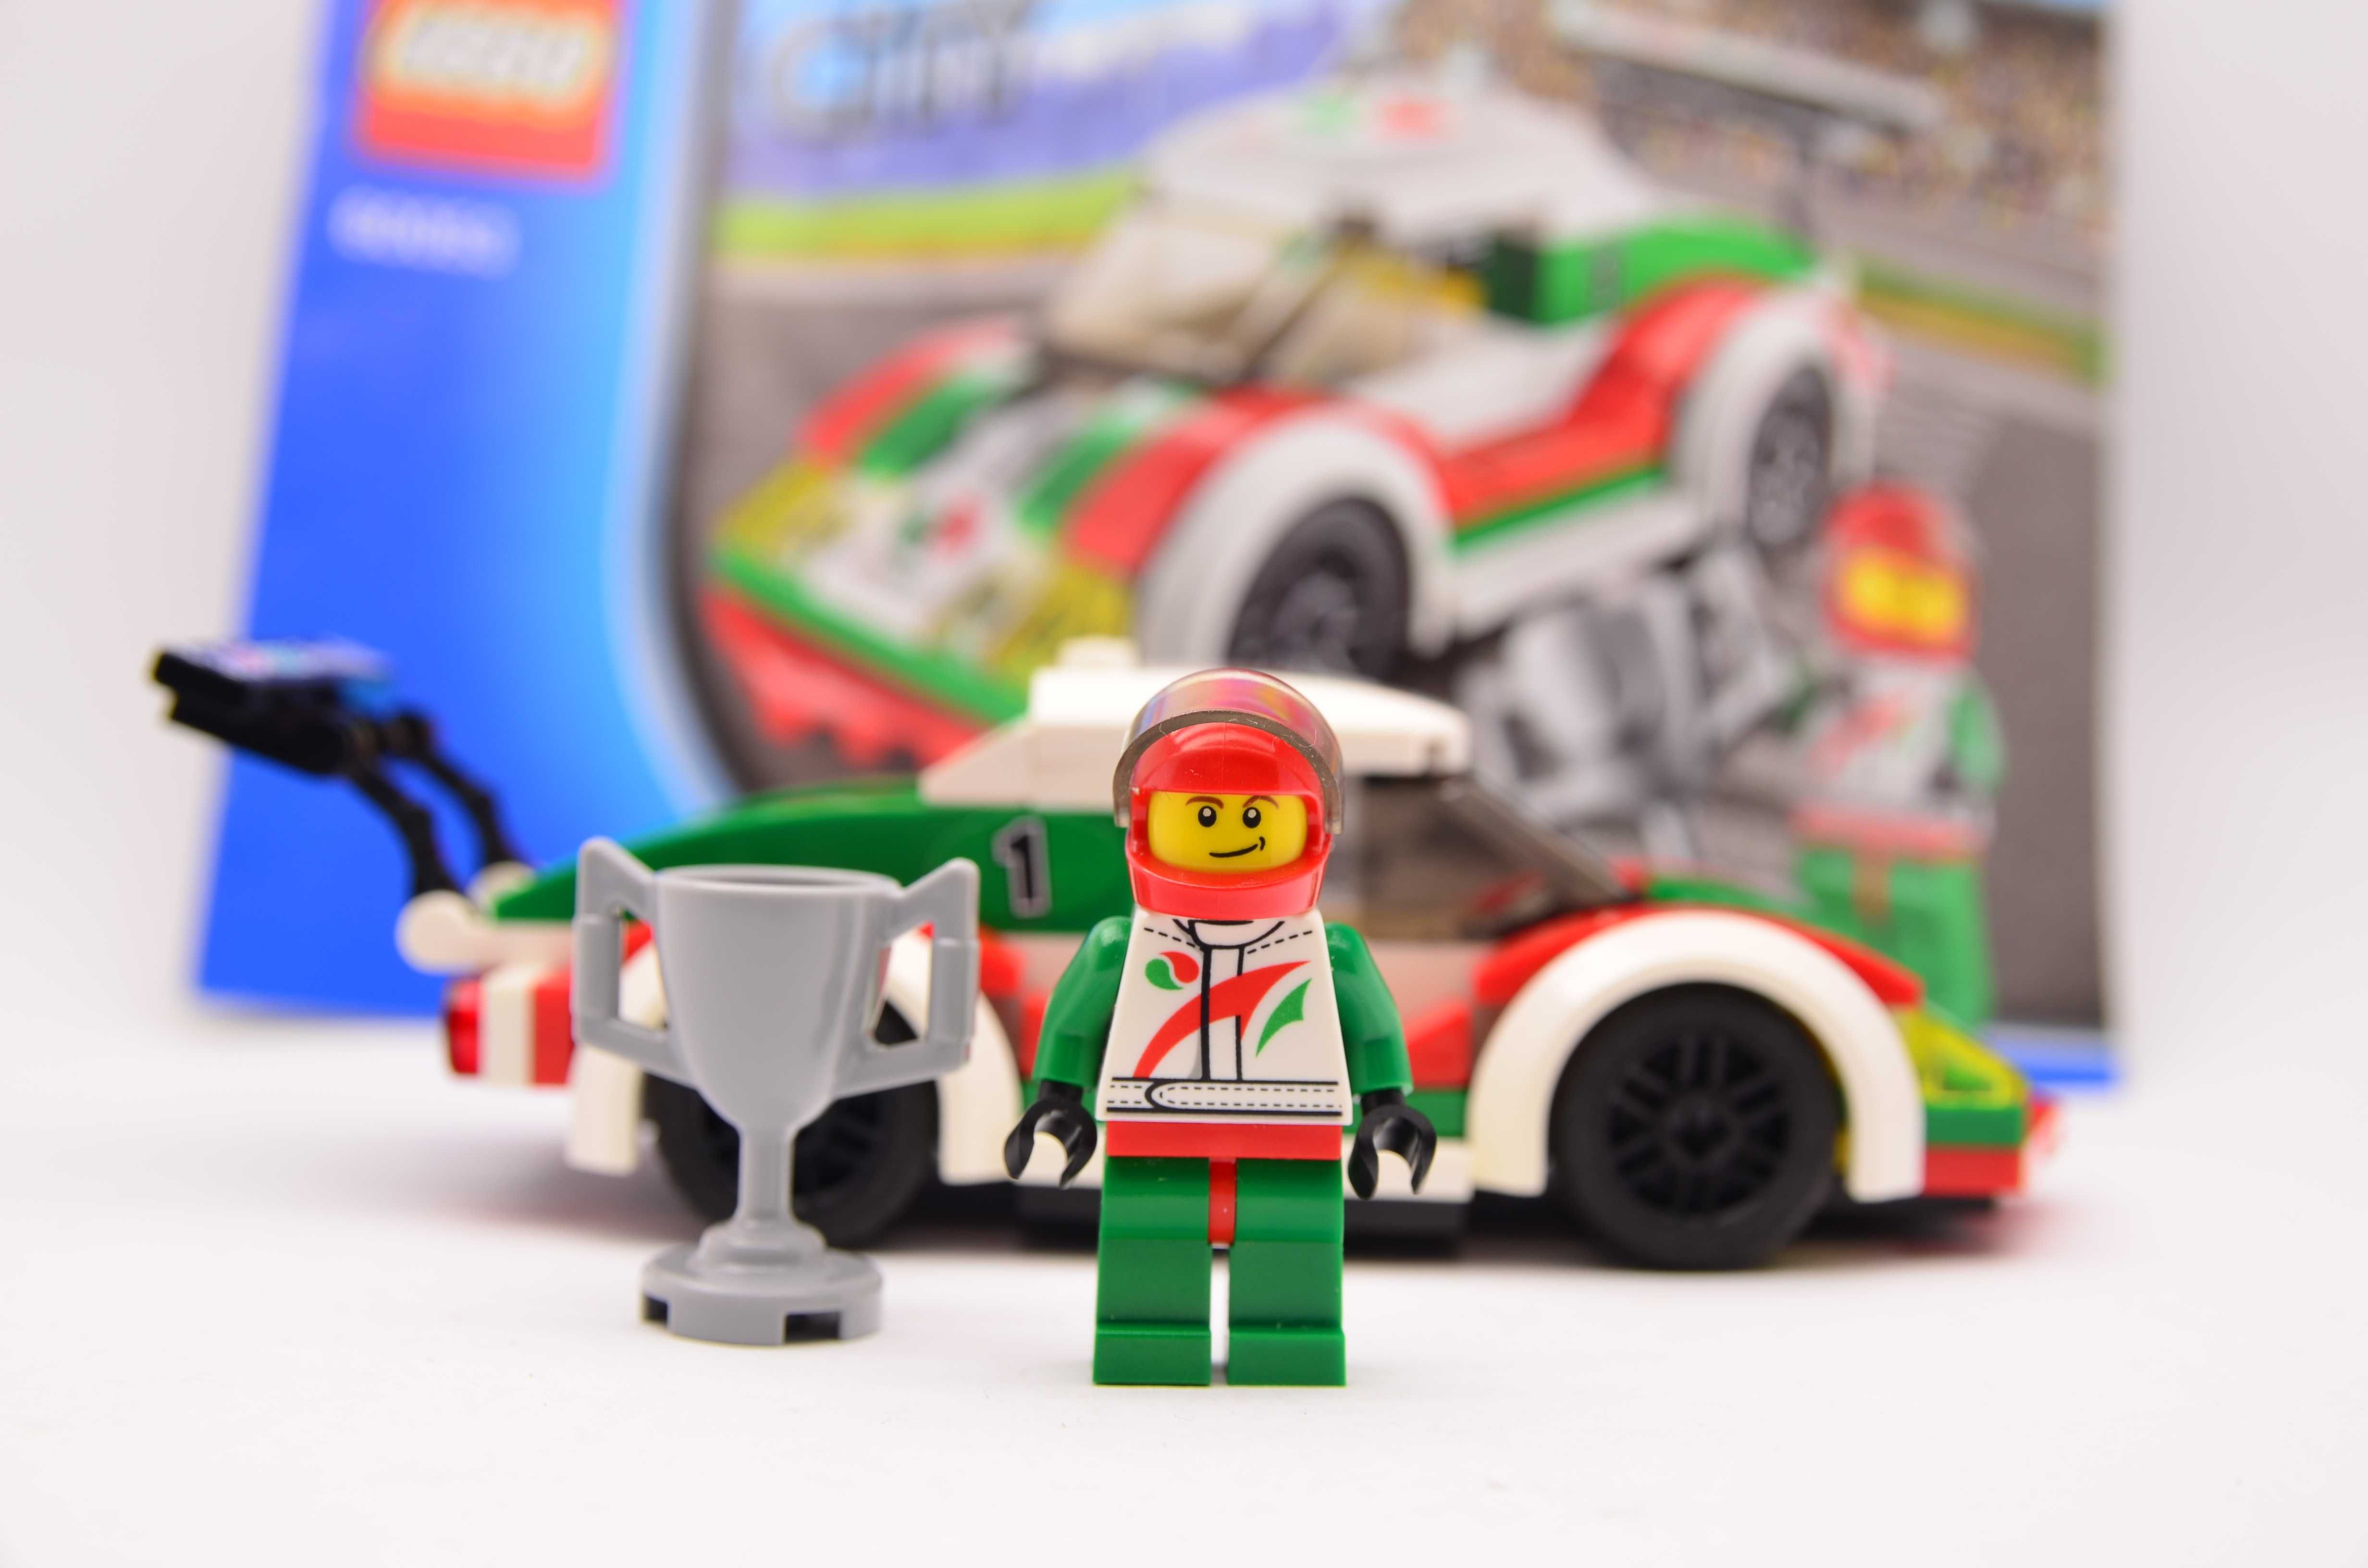 LEGO 60053 City Samochód wyścigowy